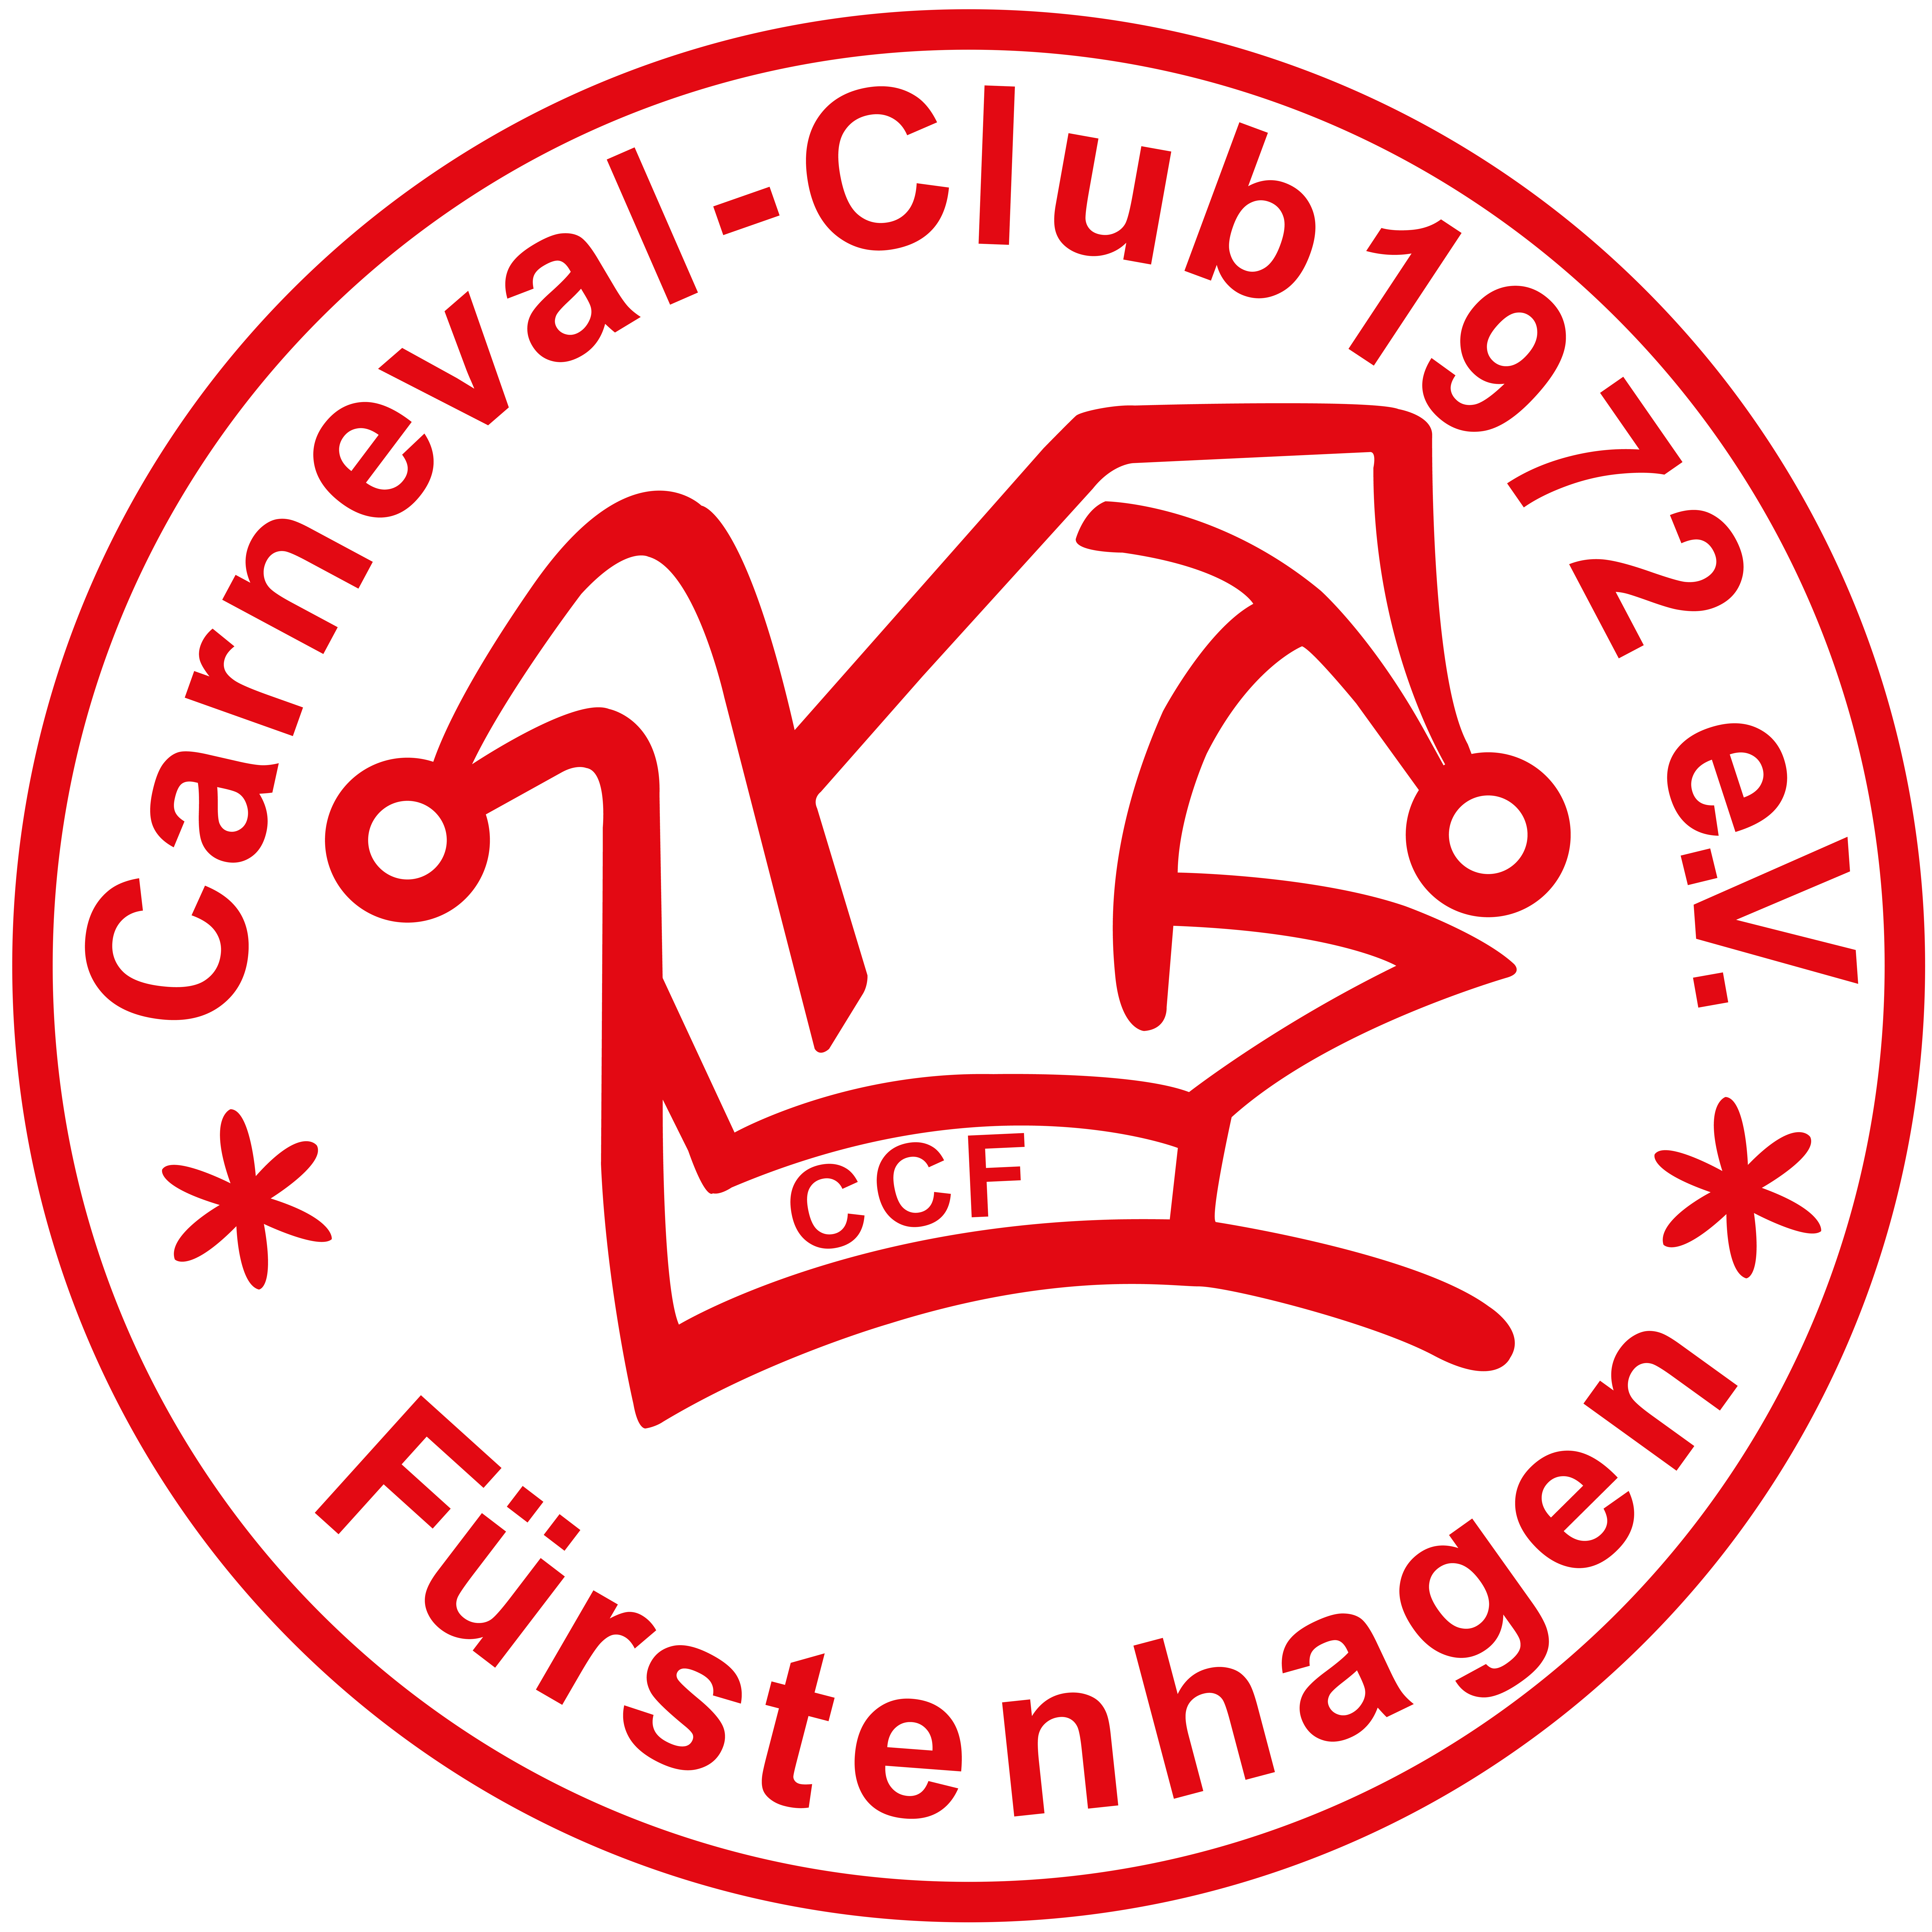 Carneval Club Fürstenhagen